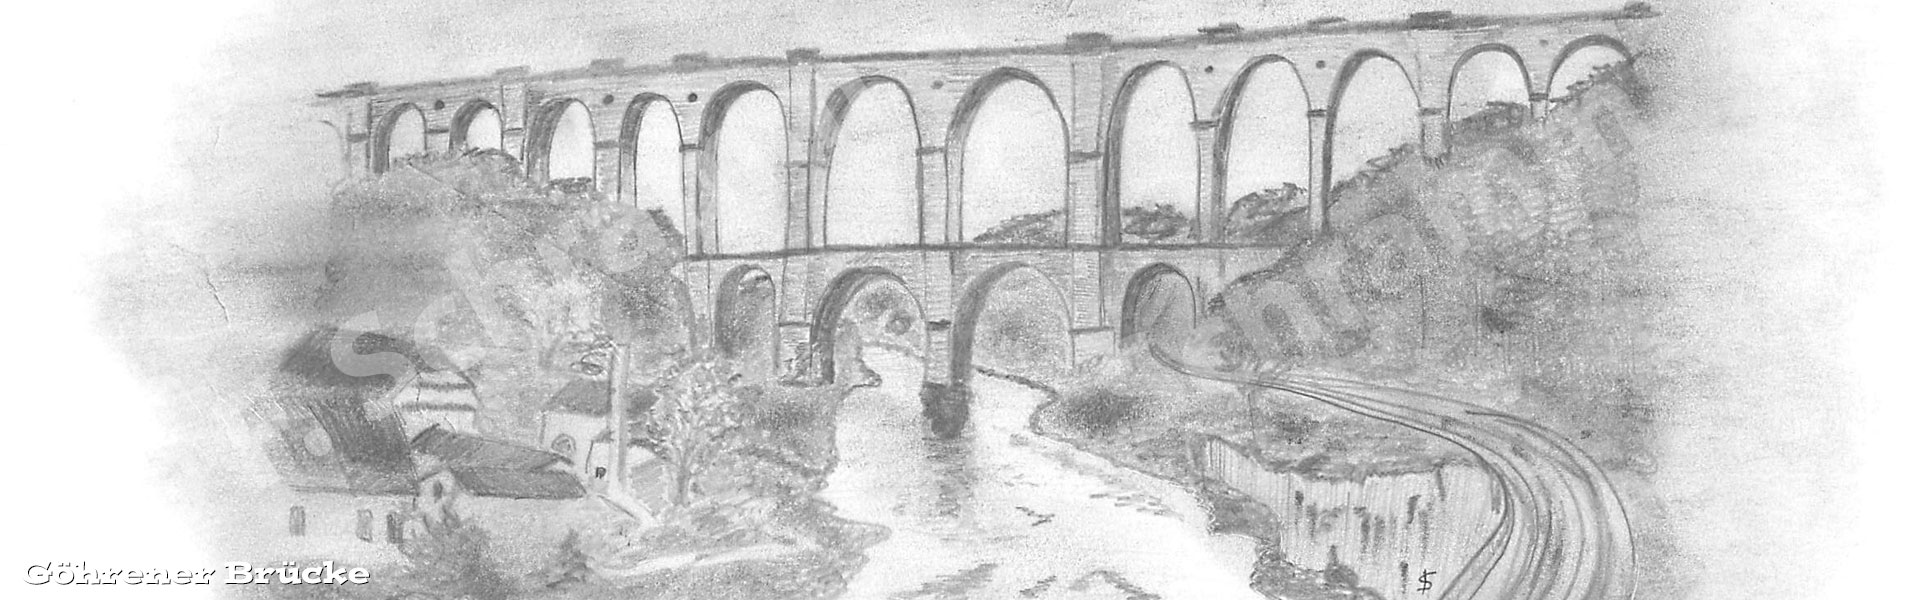 Zeichnung der Göhrener Brücke